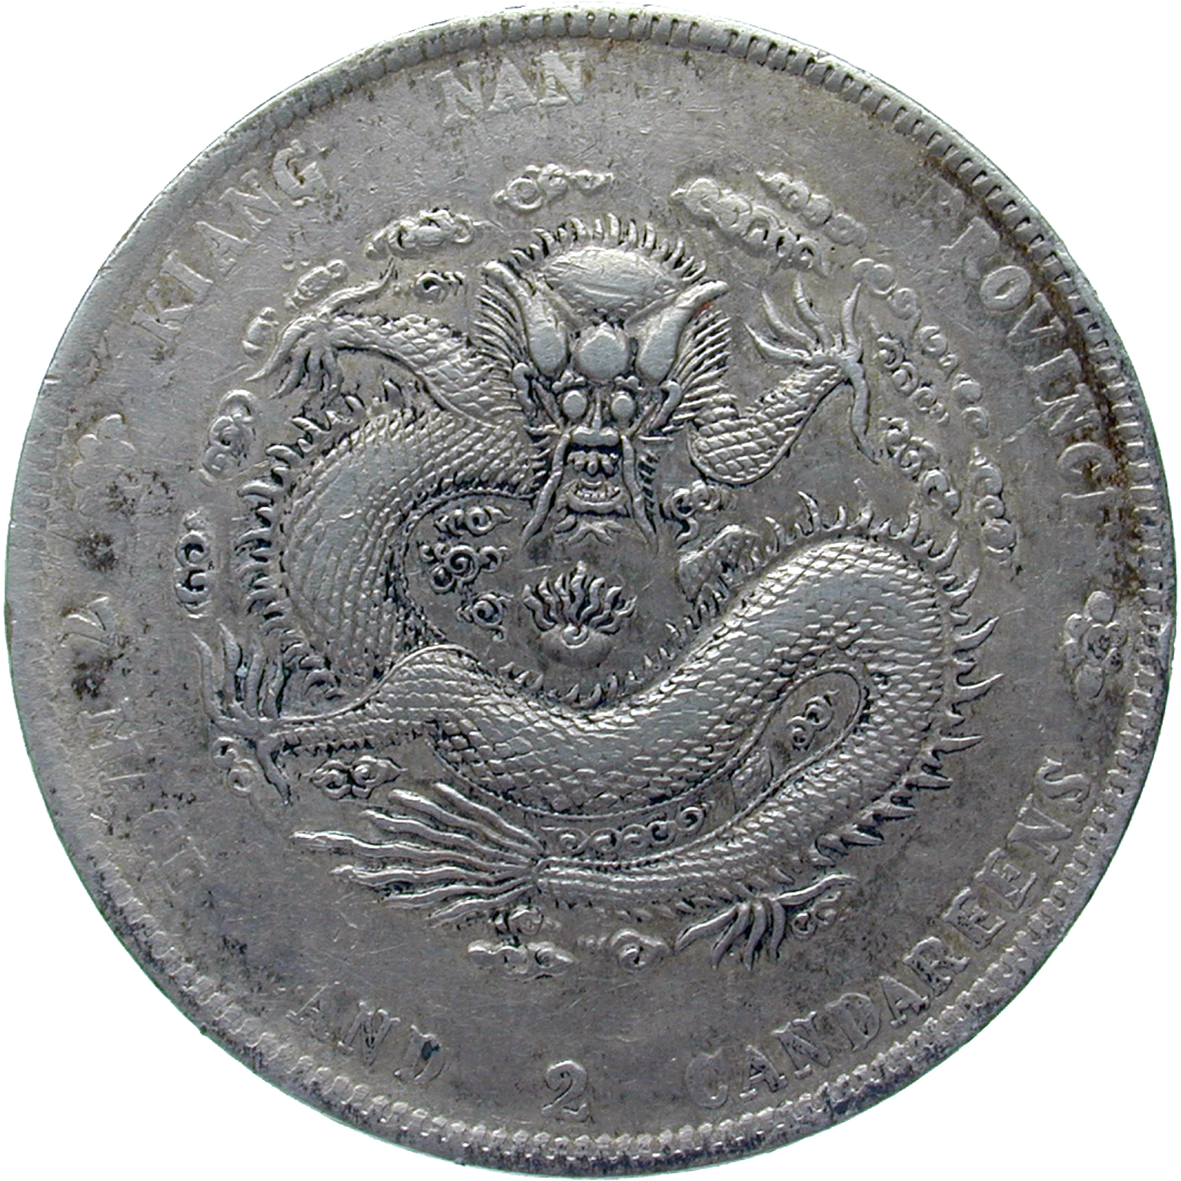 Chinese Empire, Qing Dynasty, Guangxu, Jiangnan Province, Yuan (Dragon Dollar) 1889 (obverse)